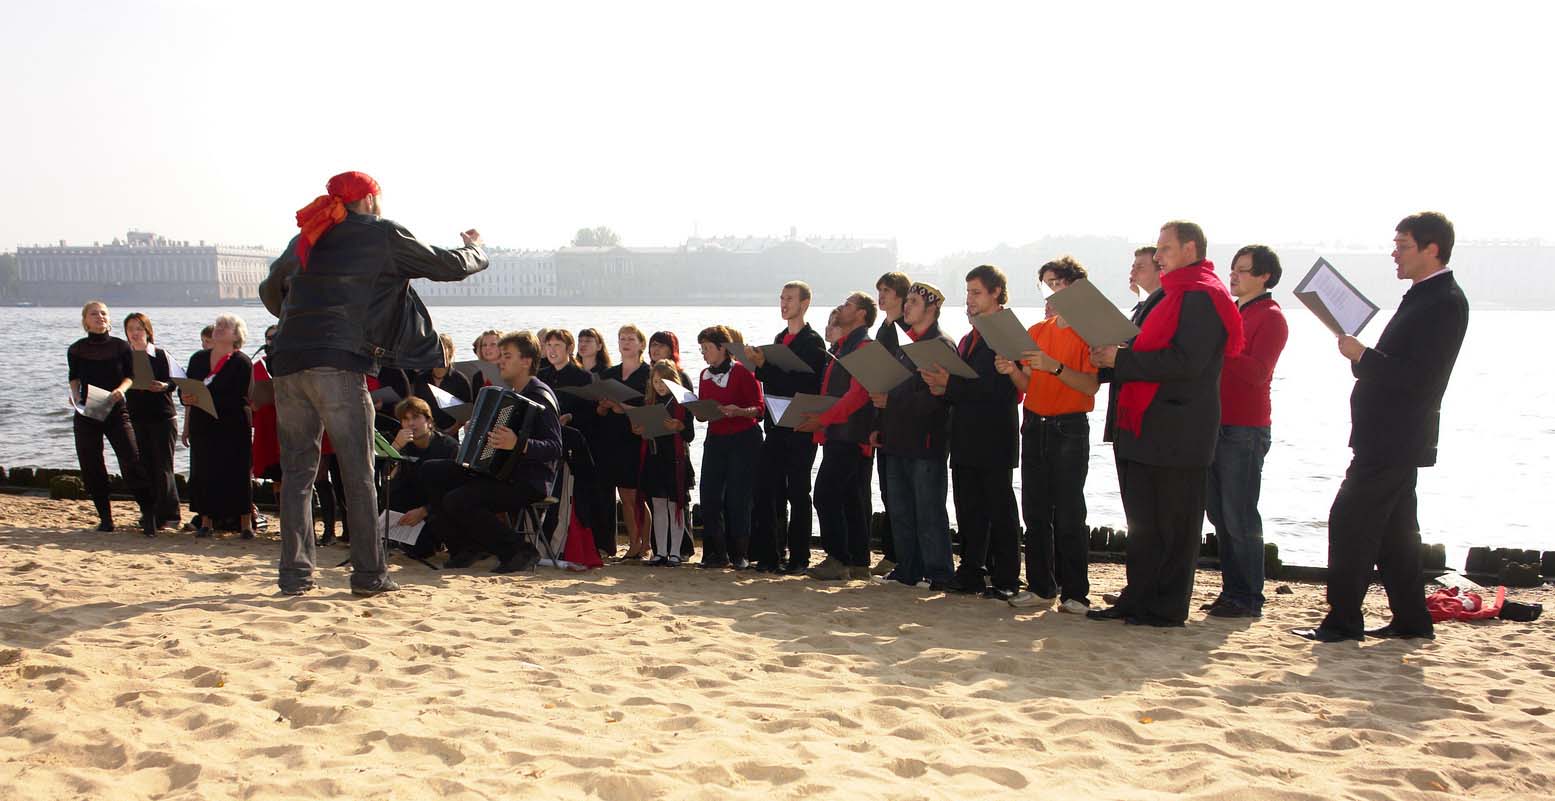 Хор жалобщиков под управлением Александра Маноцкова выступает на пляже Петропавловской крепости. Фото Юрия Румянцева